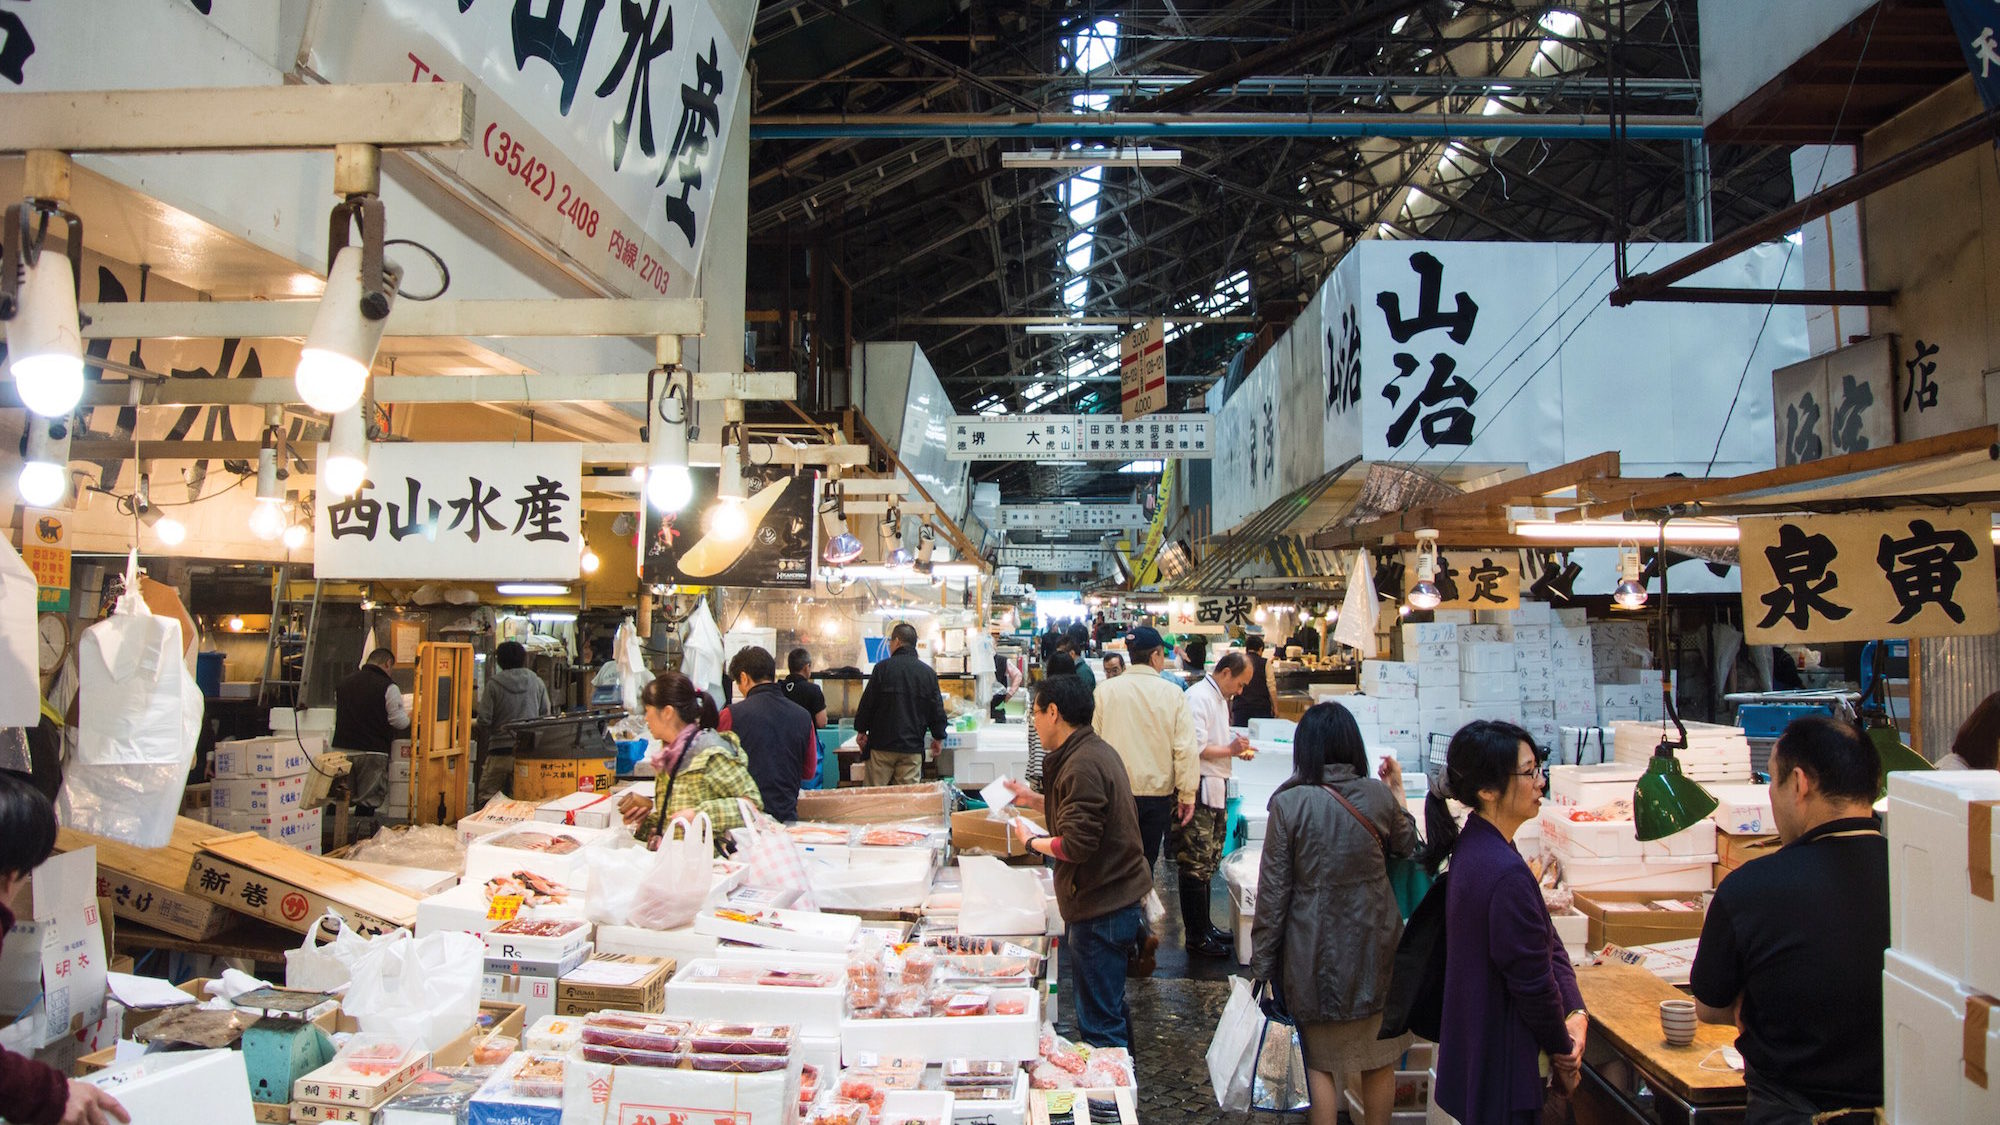 Tsukiji on the Verge of Change